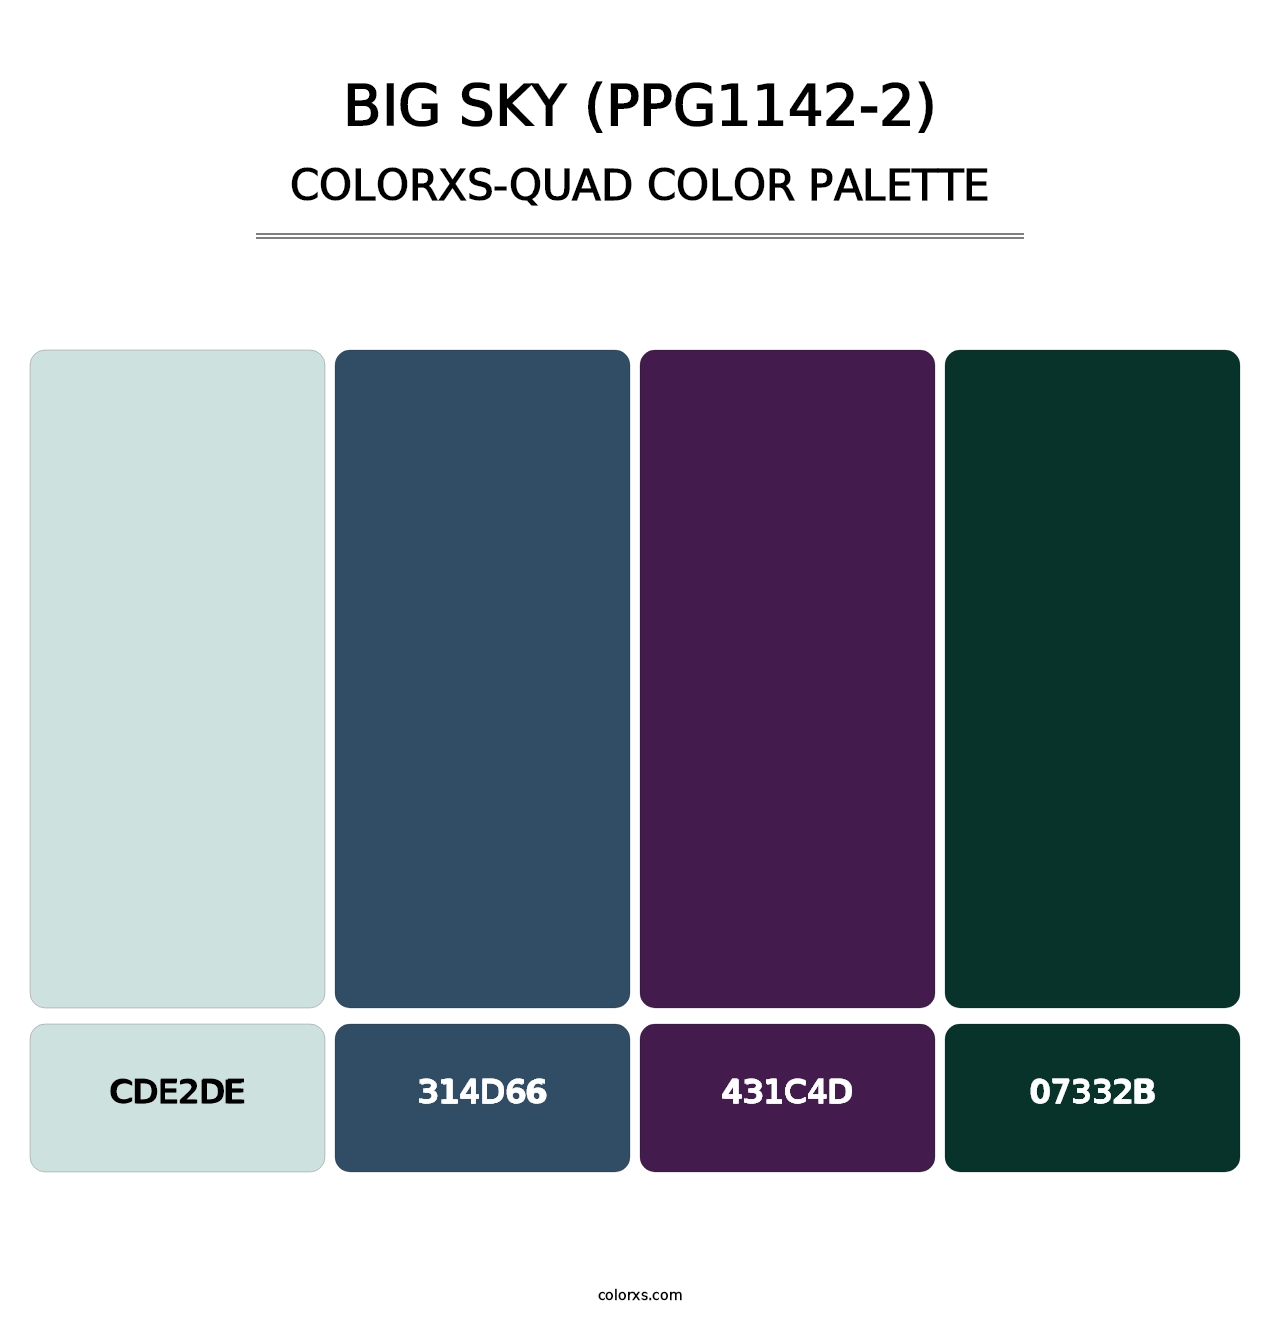 Big Sky (PPG1142-2) - Colorxs Quad Palette